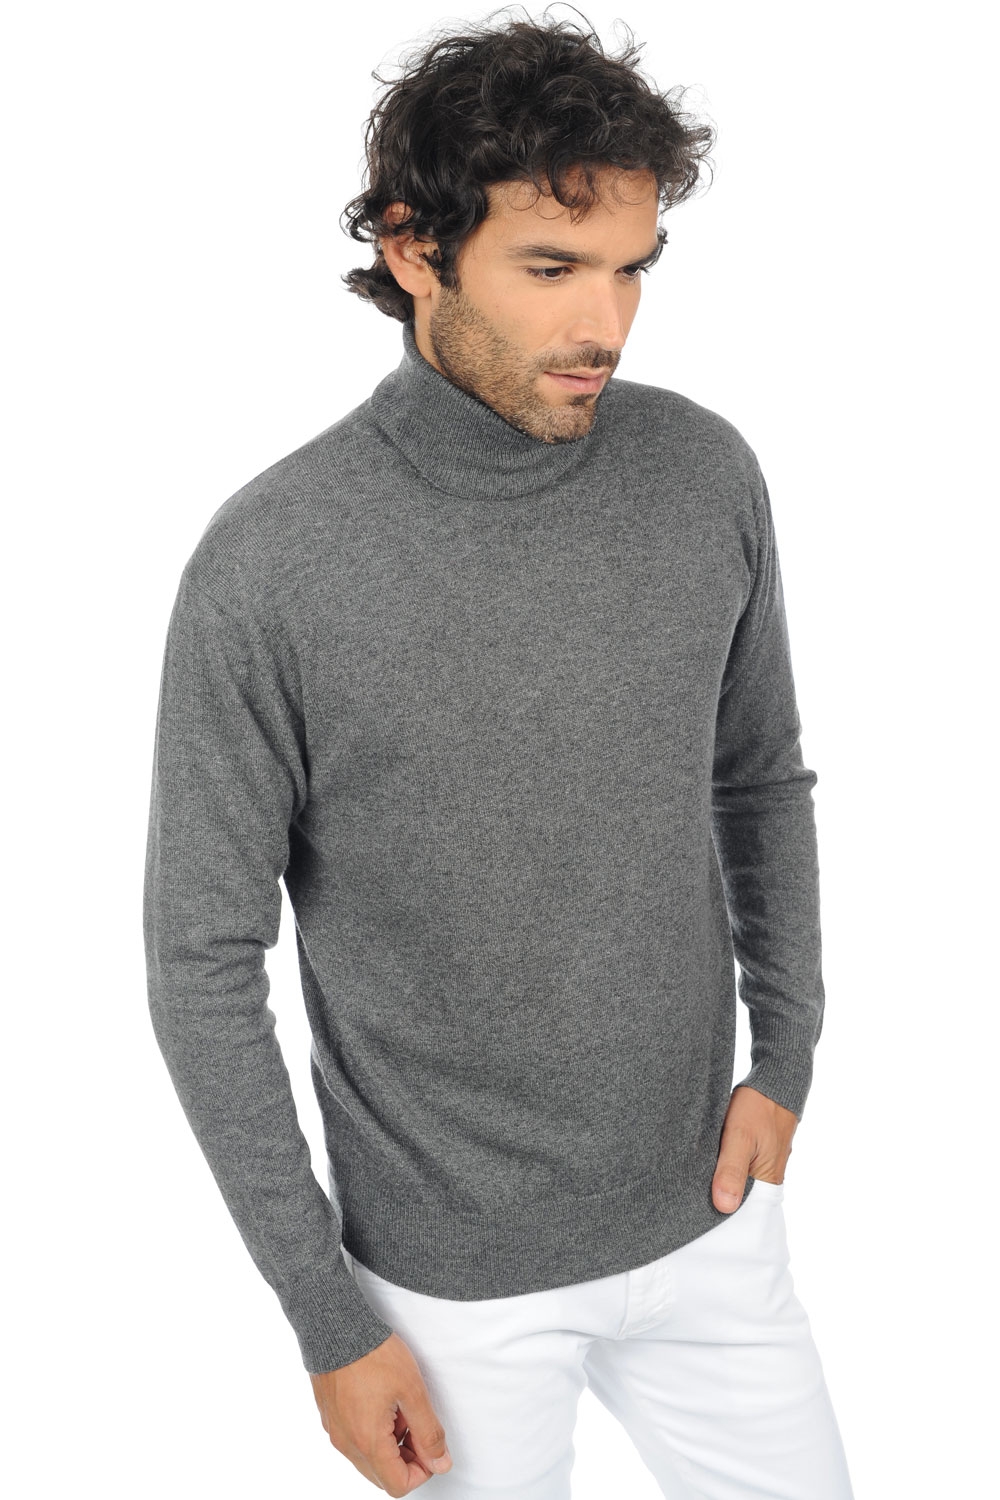 Cashmere men premium sweaters edgar premium premium graphite 3xl